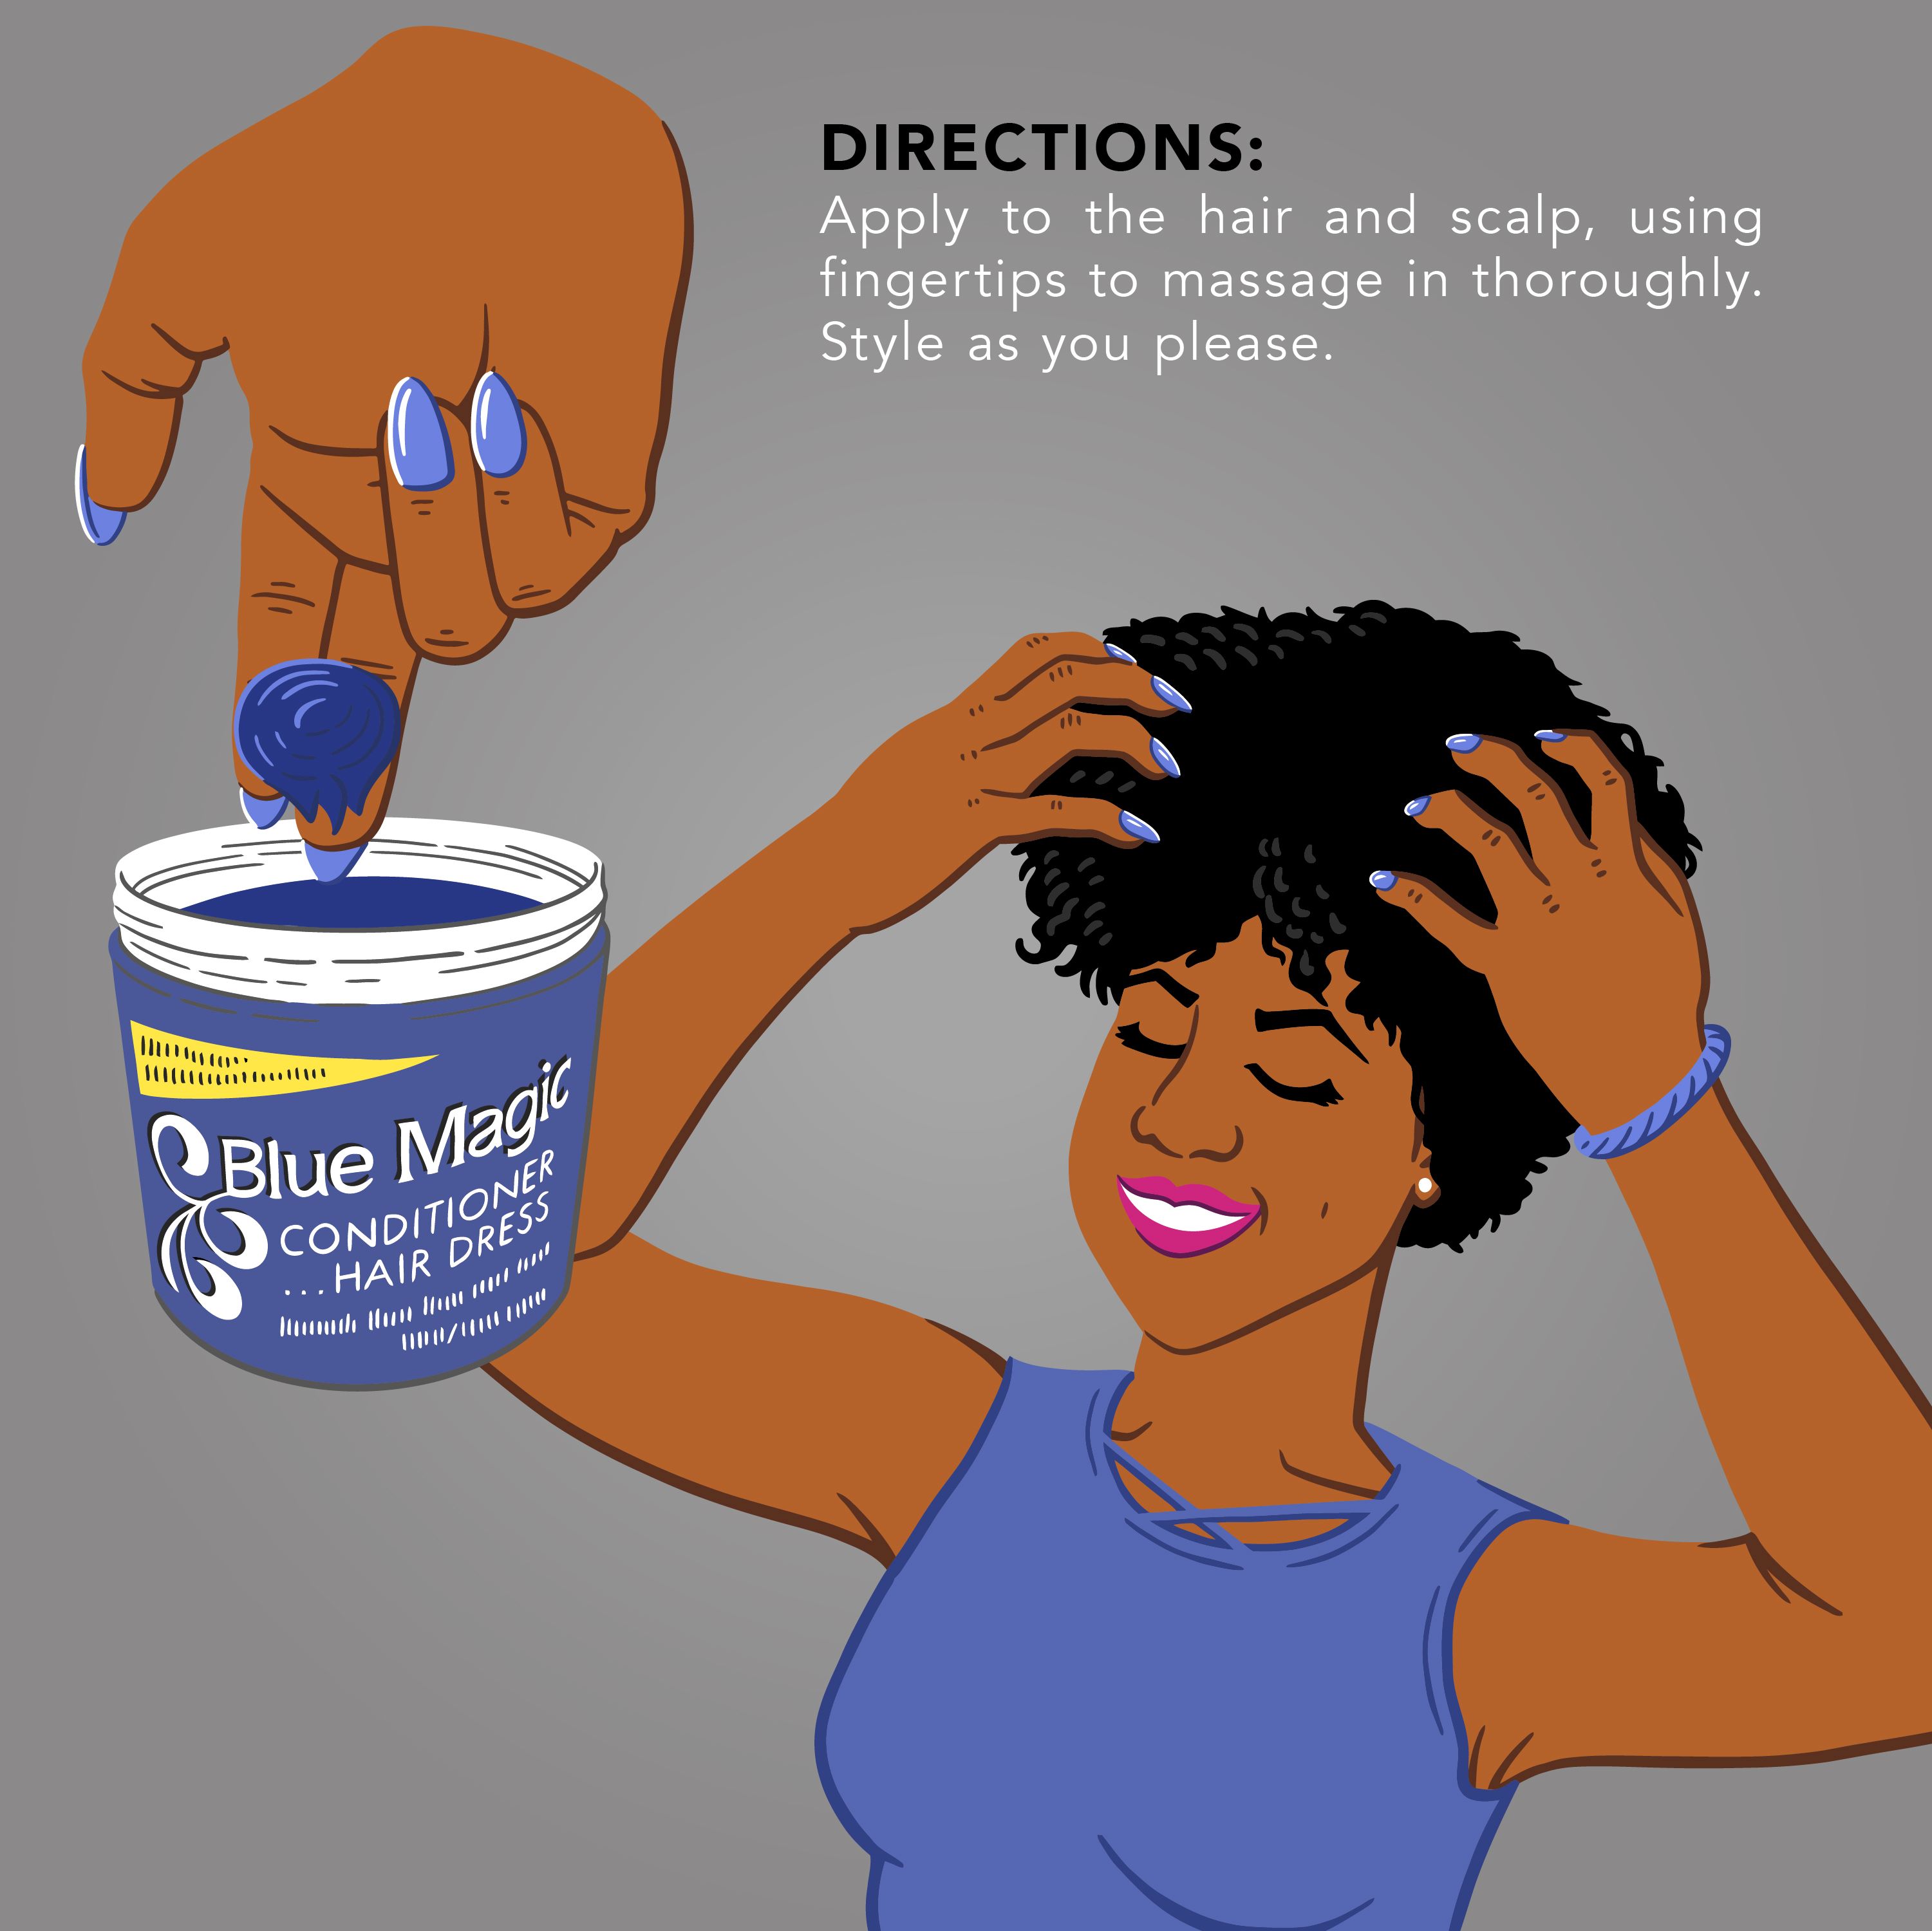 Blue Magic Conditioning Hair Dressing 12 oz., Dry, Anti Breakage, Nourishing, Moisturizing - image 4 of 7